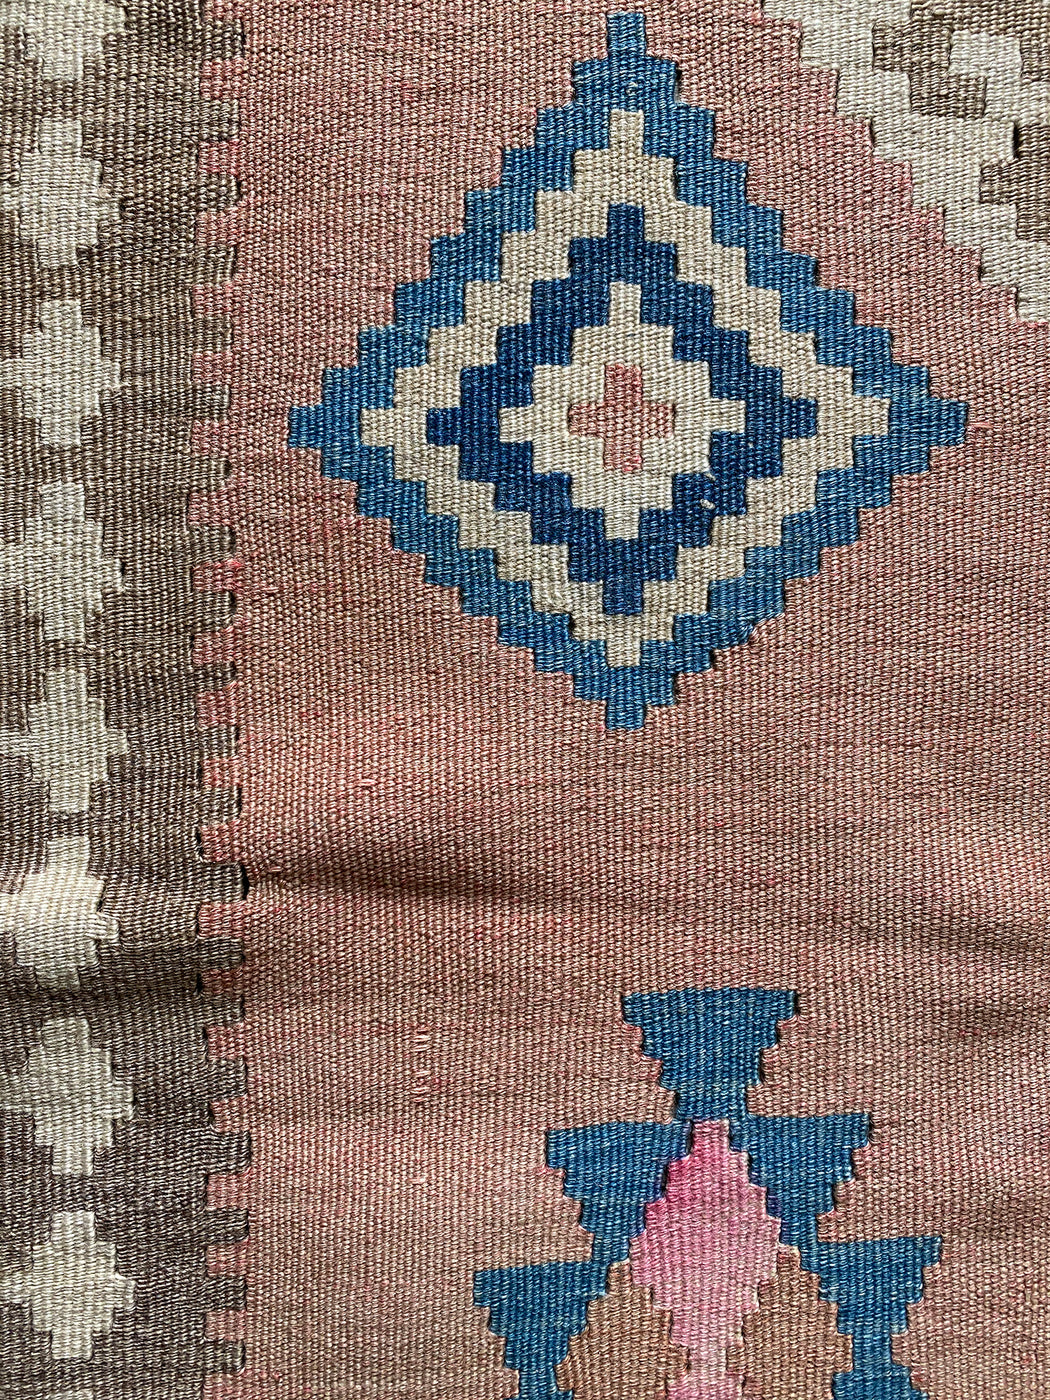 3’ 4” x 4’ 9” Pink Diamond Vintage Turkish Kilim Rug